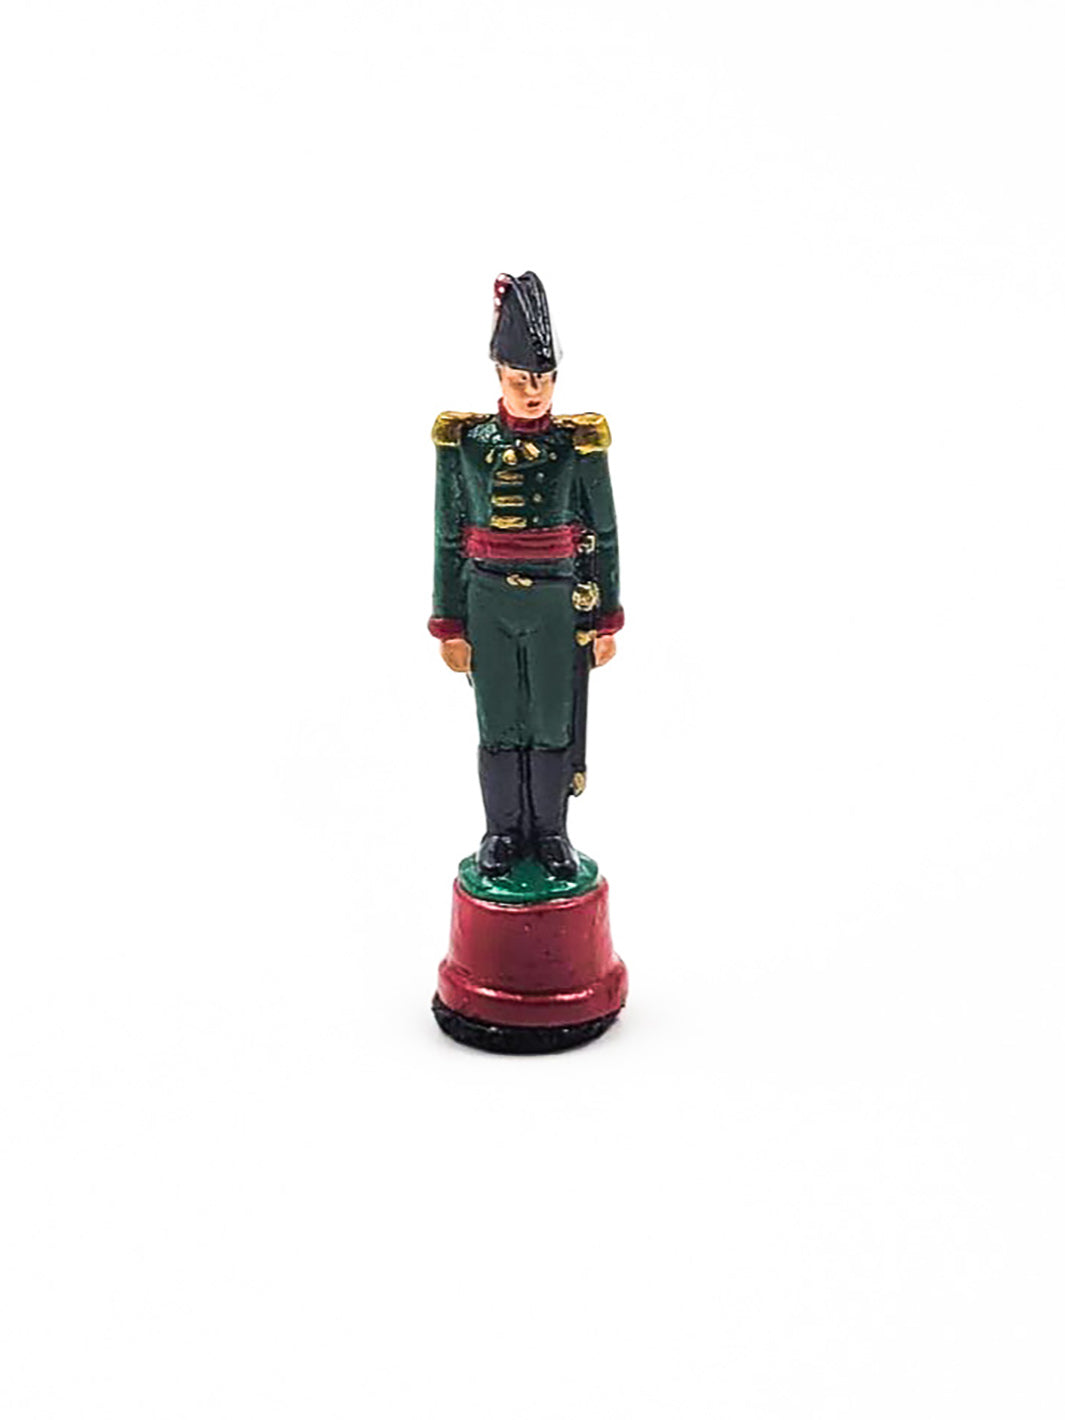 Piece Roi portant une tenue verte et rouge vue de devant